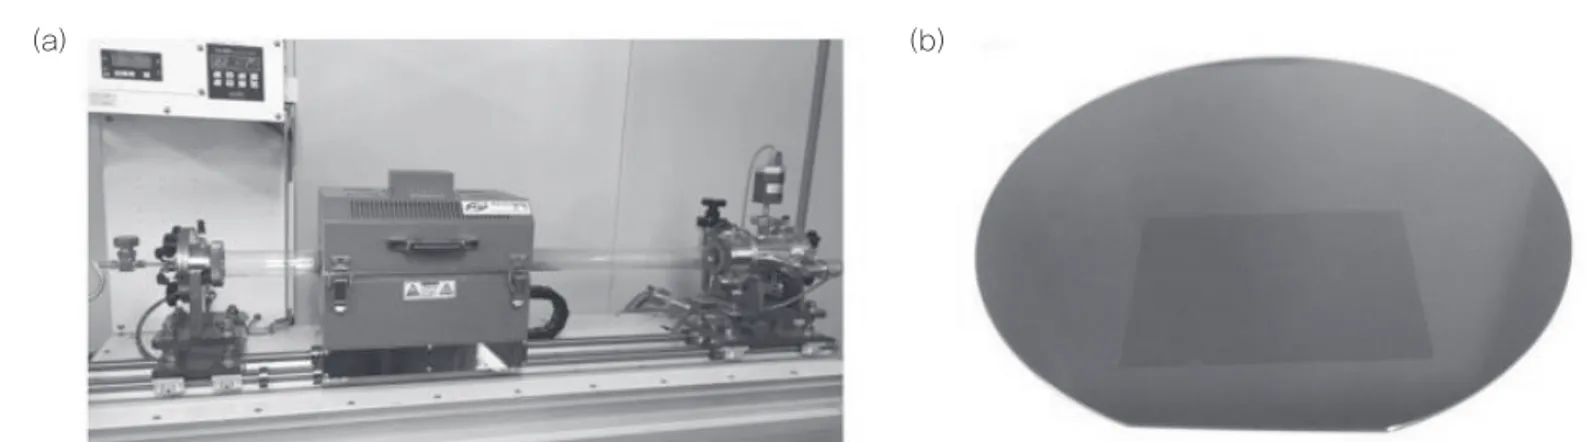 그림 3 (a) 그래핀 합성에 사용된 화학 기상증착장비 사진; (b) 실리콘 웨이퍼에 전사된 단층 그래핀 사진